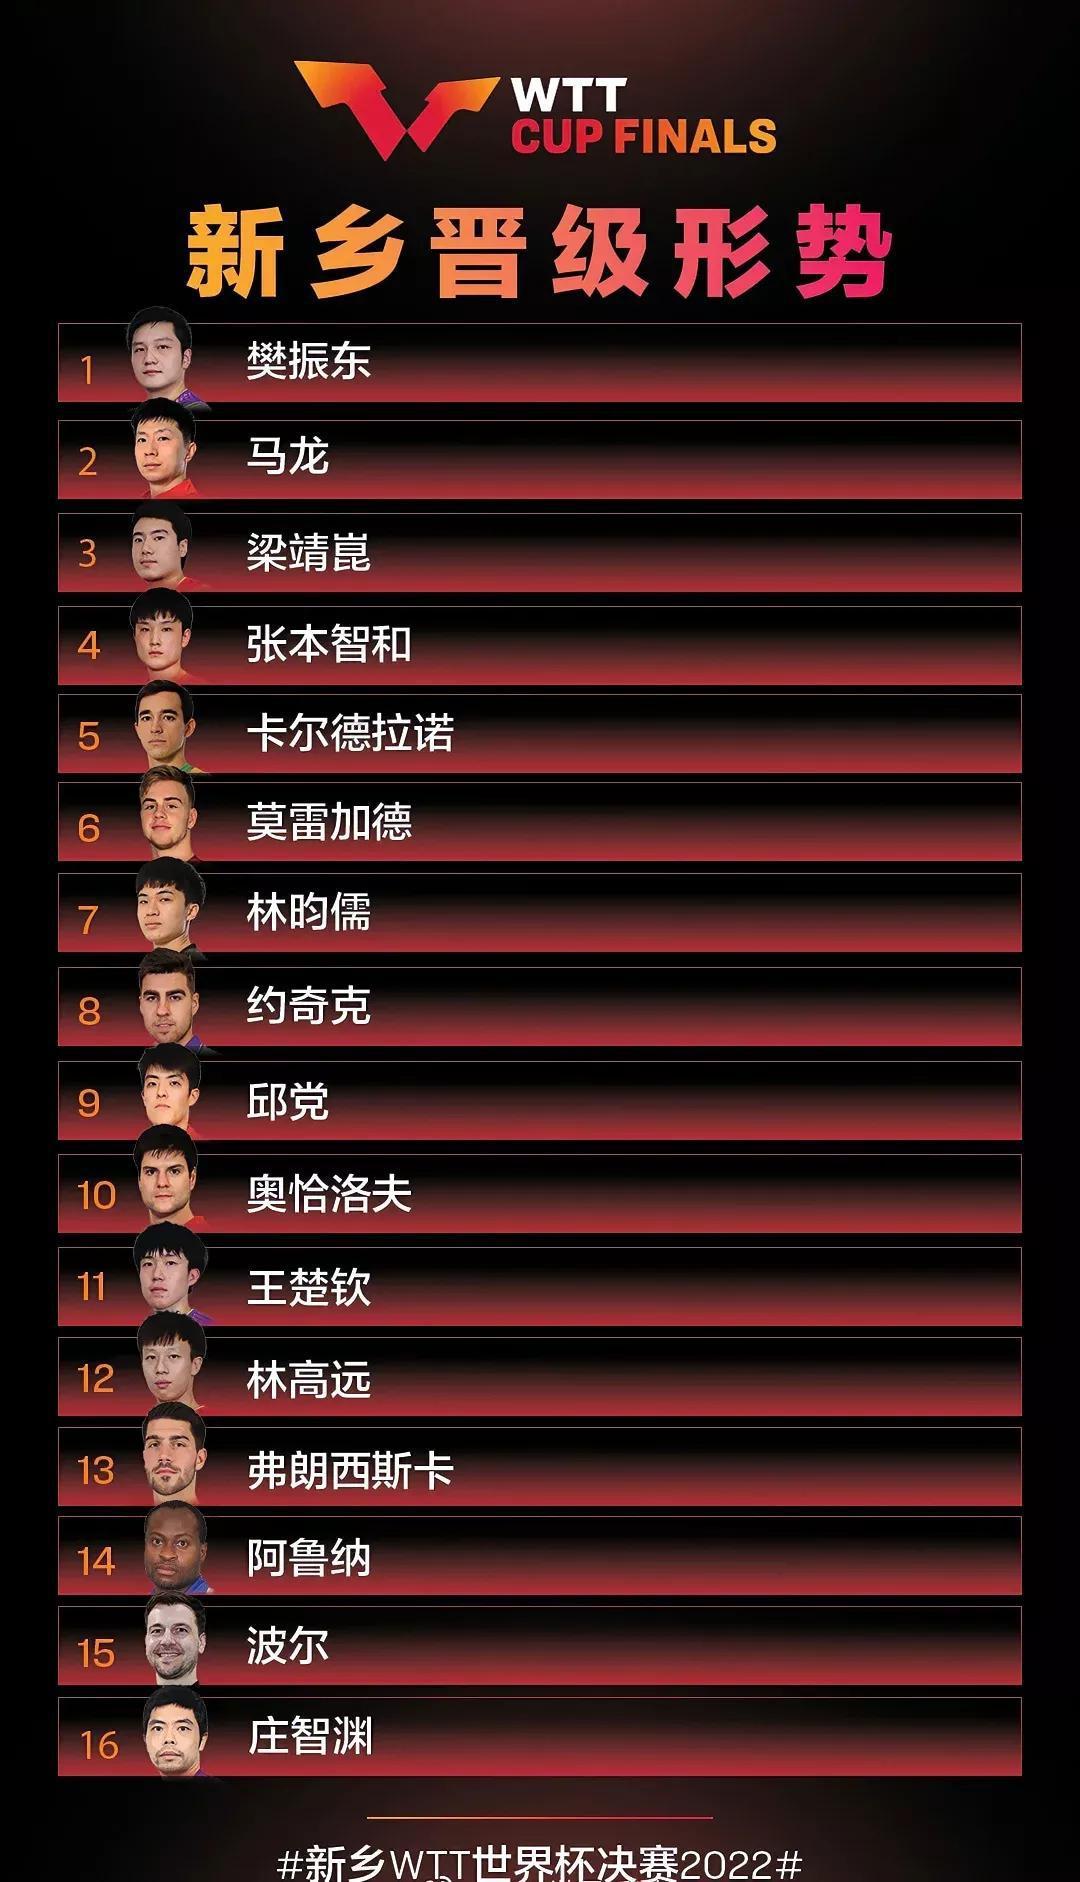 WTT乒乓球世界杯16人参赛，11人来自中国，这对女乒是好事吗？